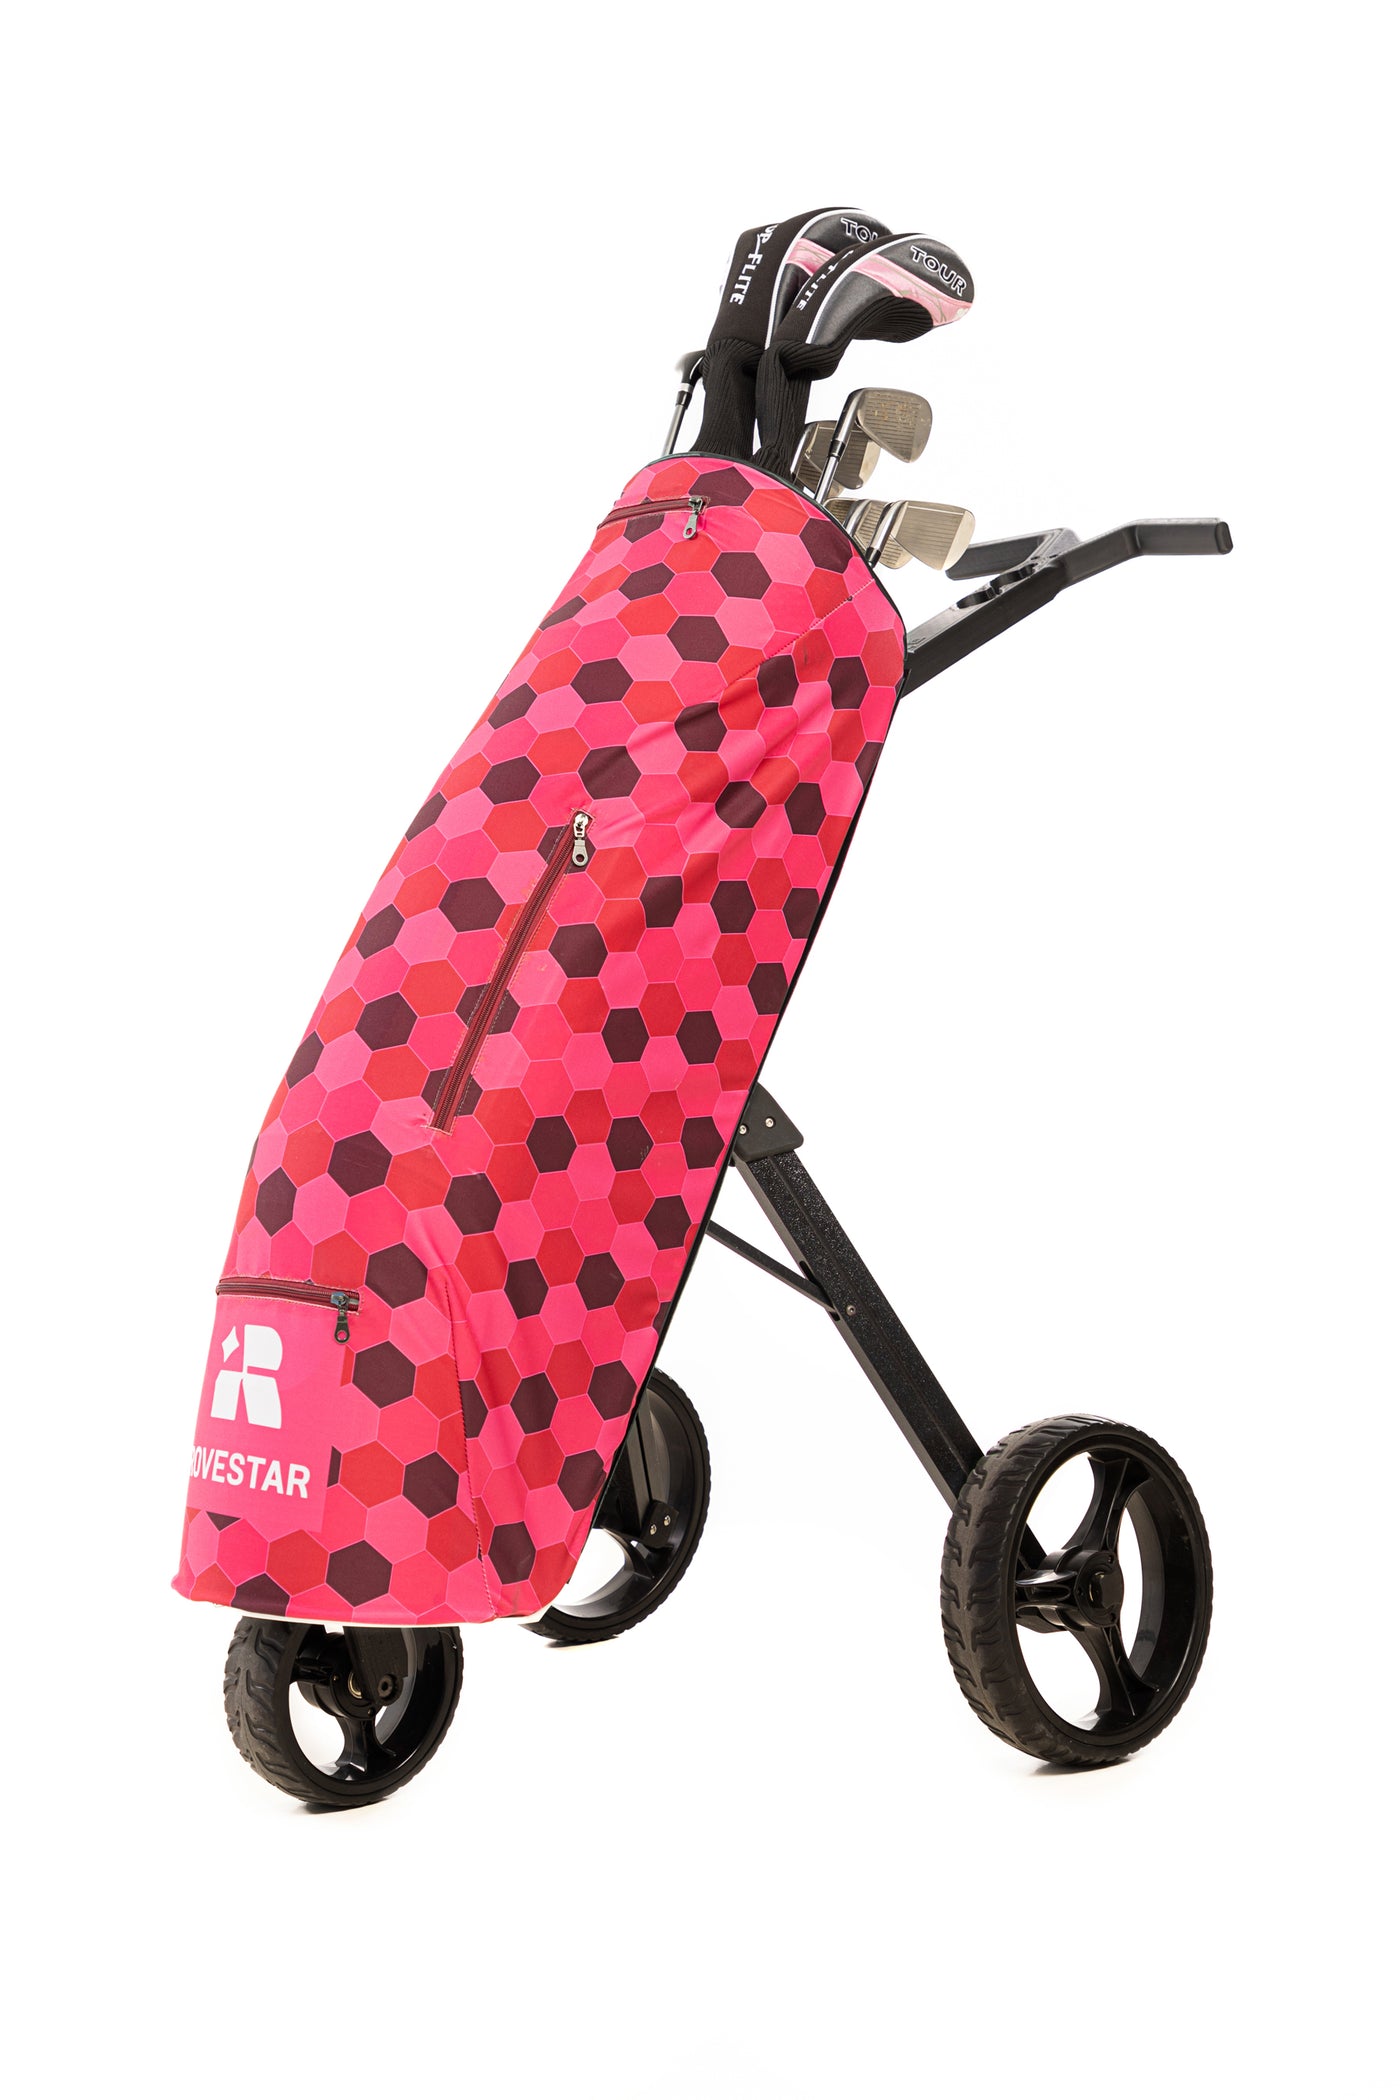 Rov12 - Golf Bag / 12 clubs + Push Cart